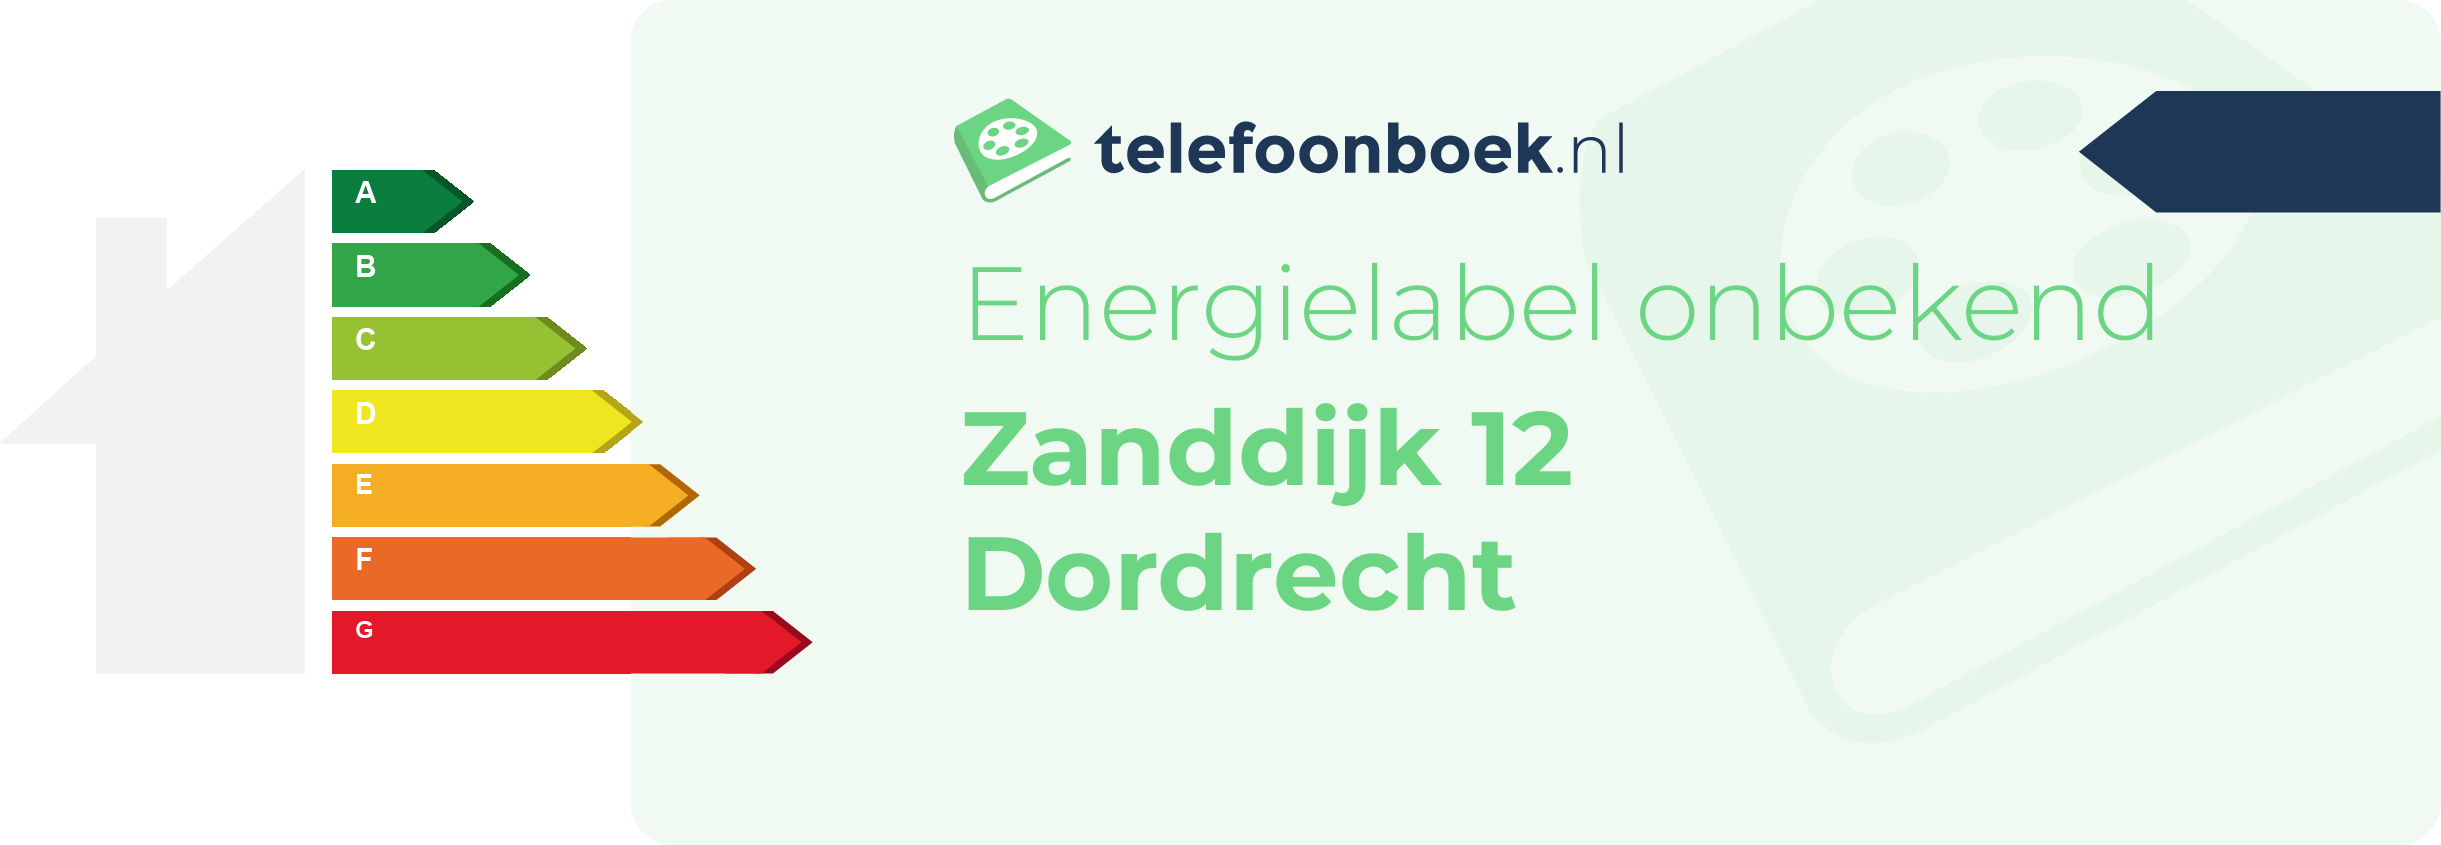 Energielabel Zanddijk 12 Dordrecht